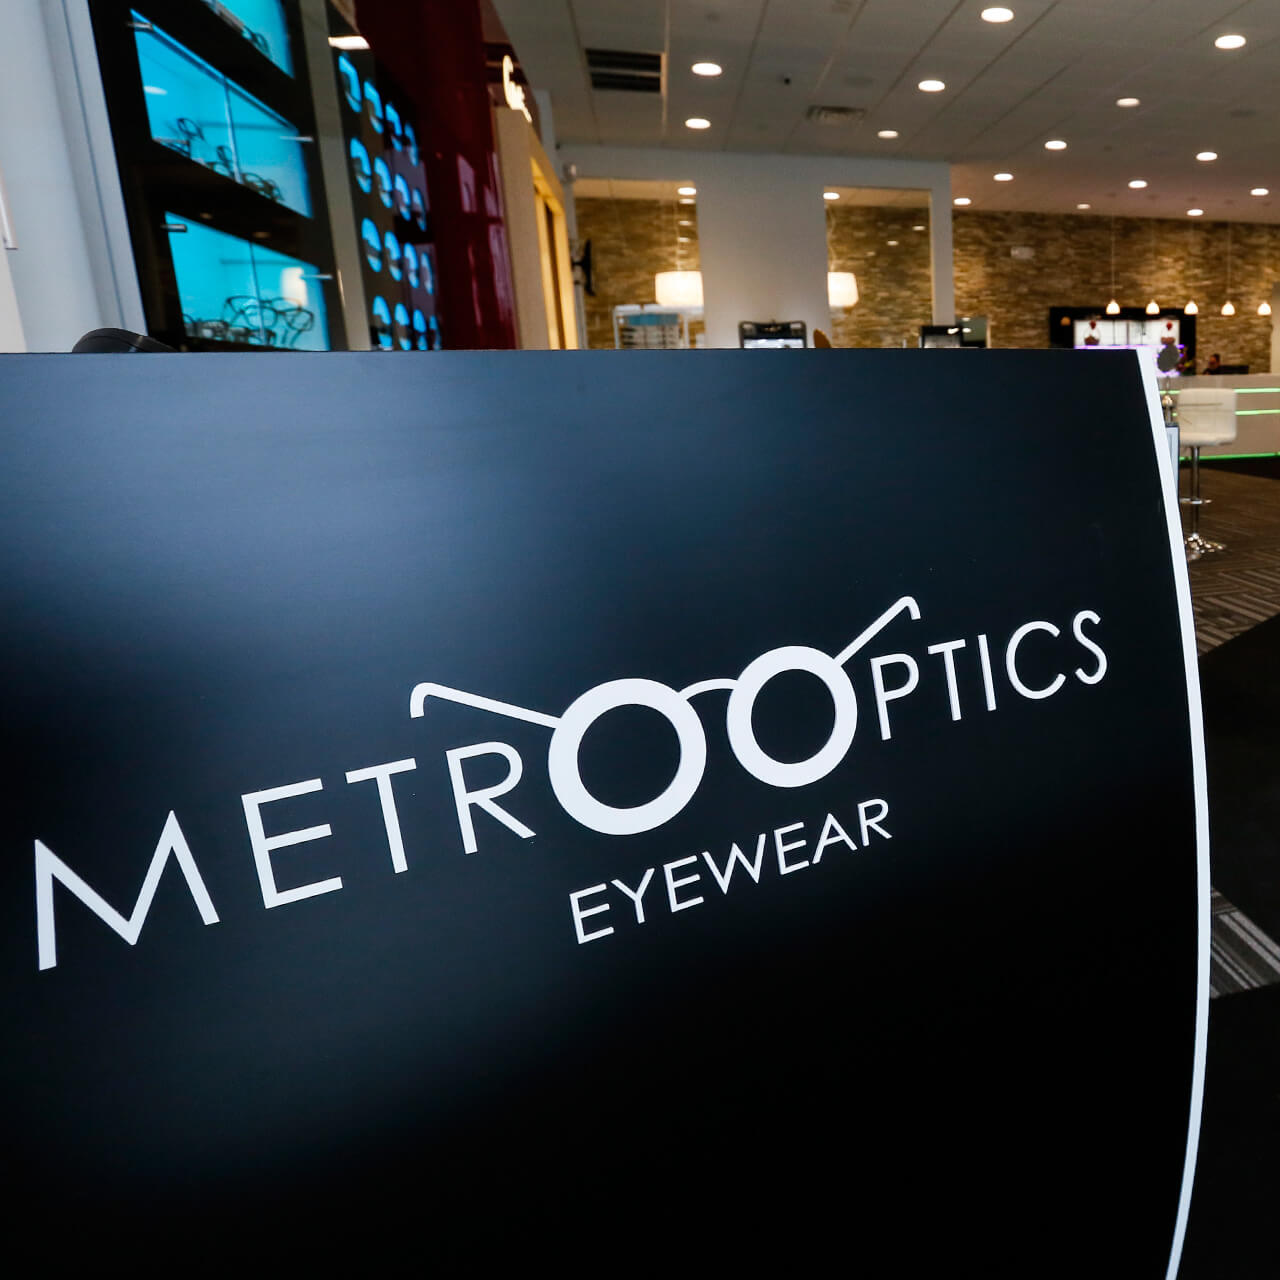 Metro Optics Eyewear